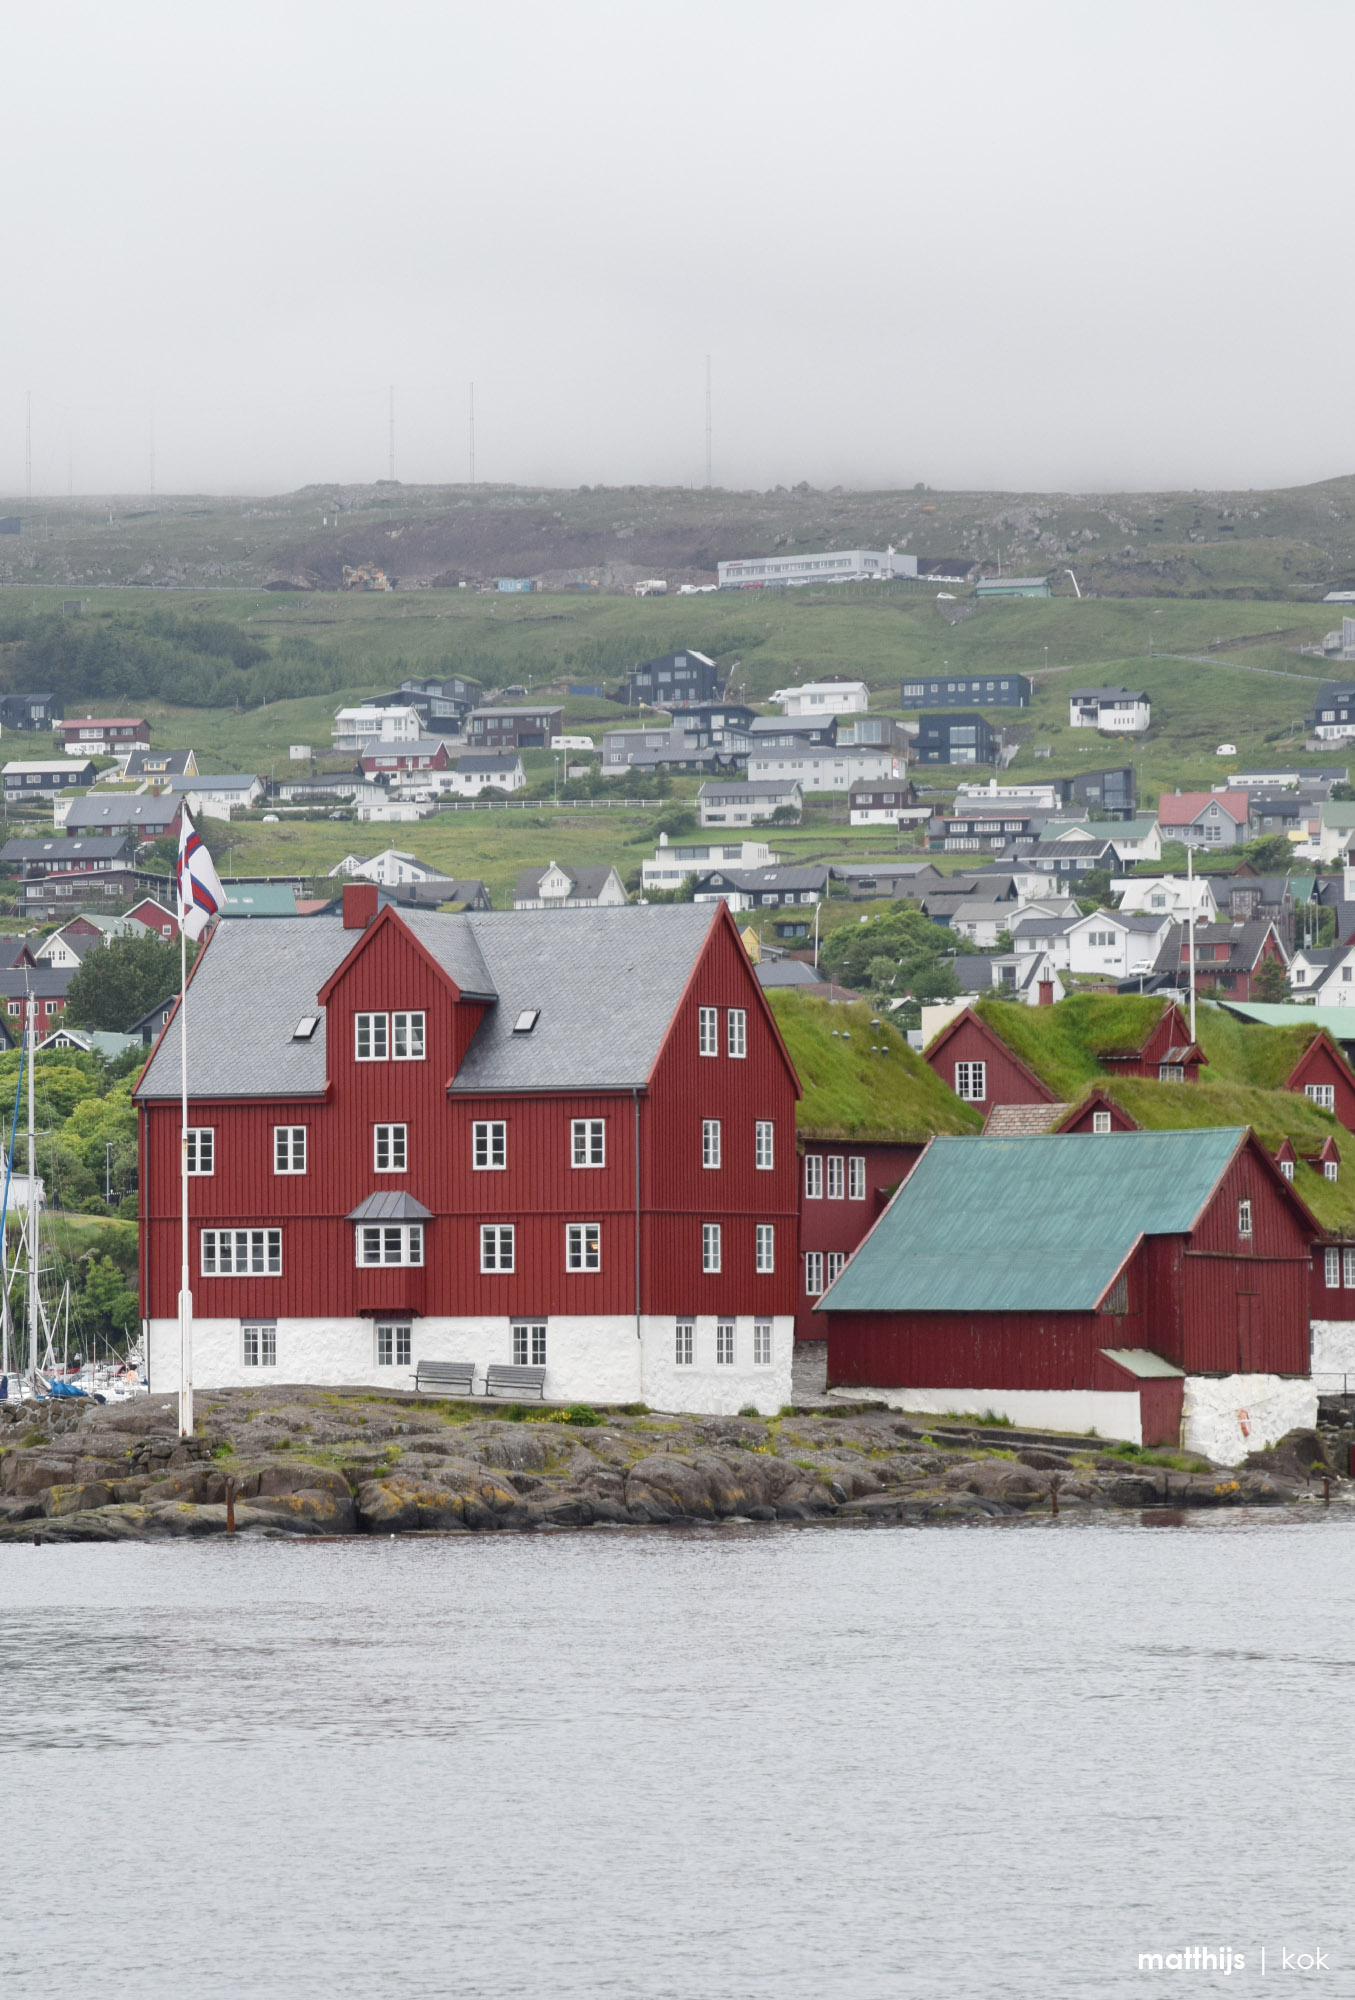 Reyn, Tórshavn, Faroe Islands | Photo by Matthijs Kok